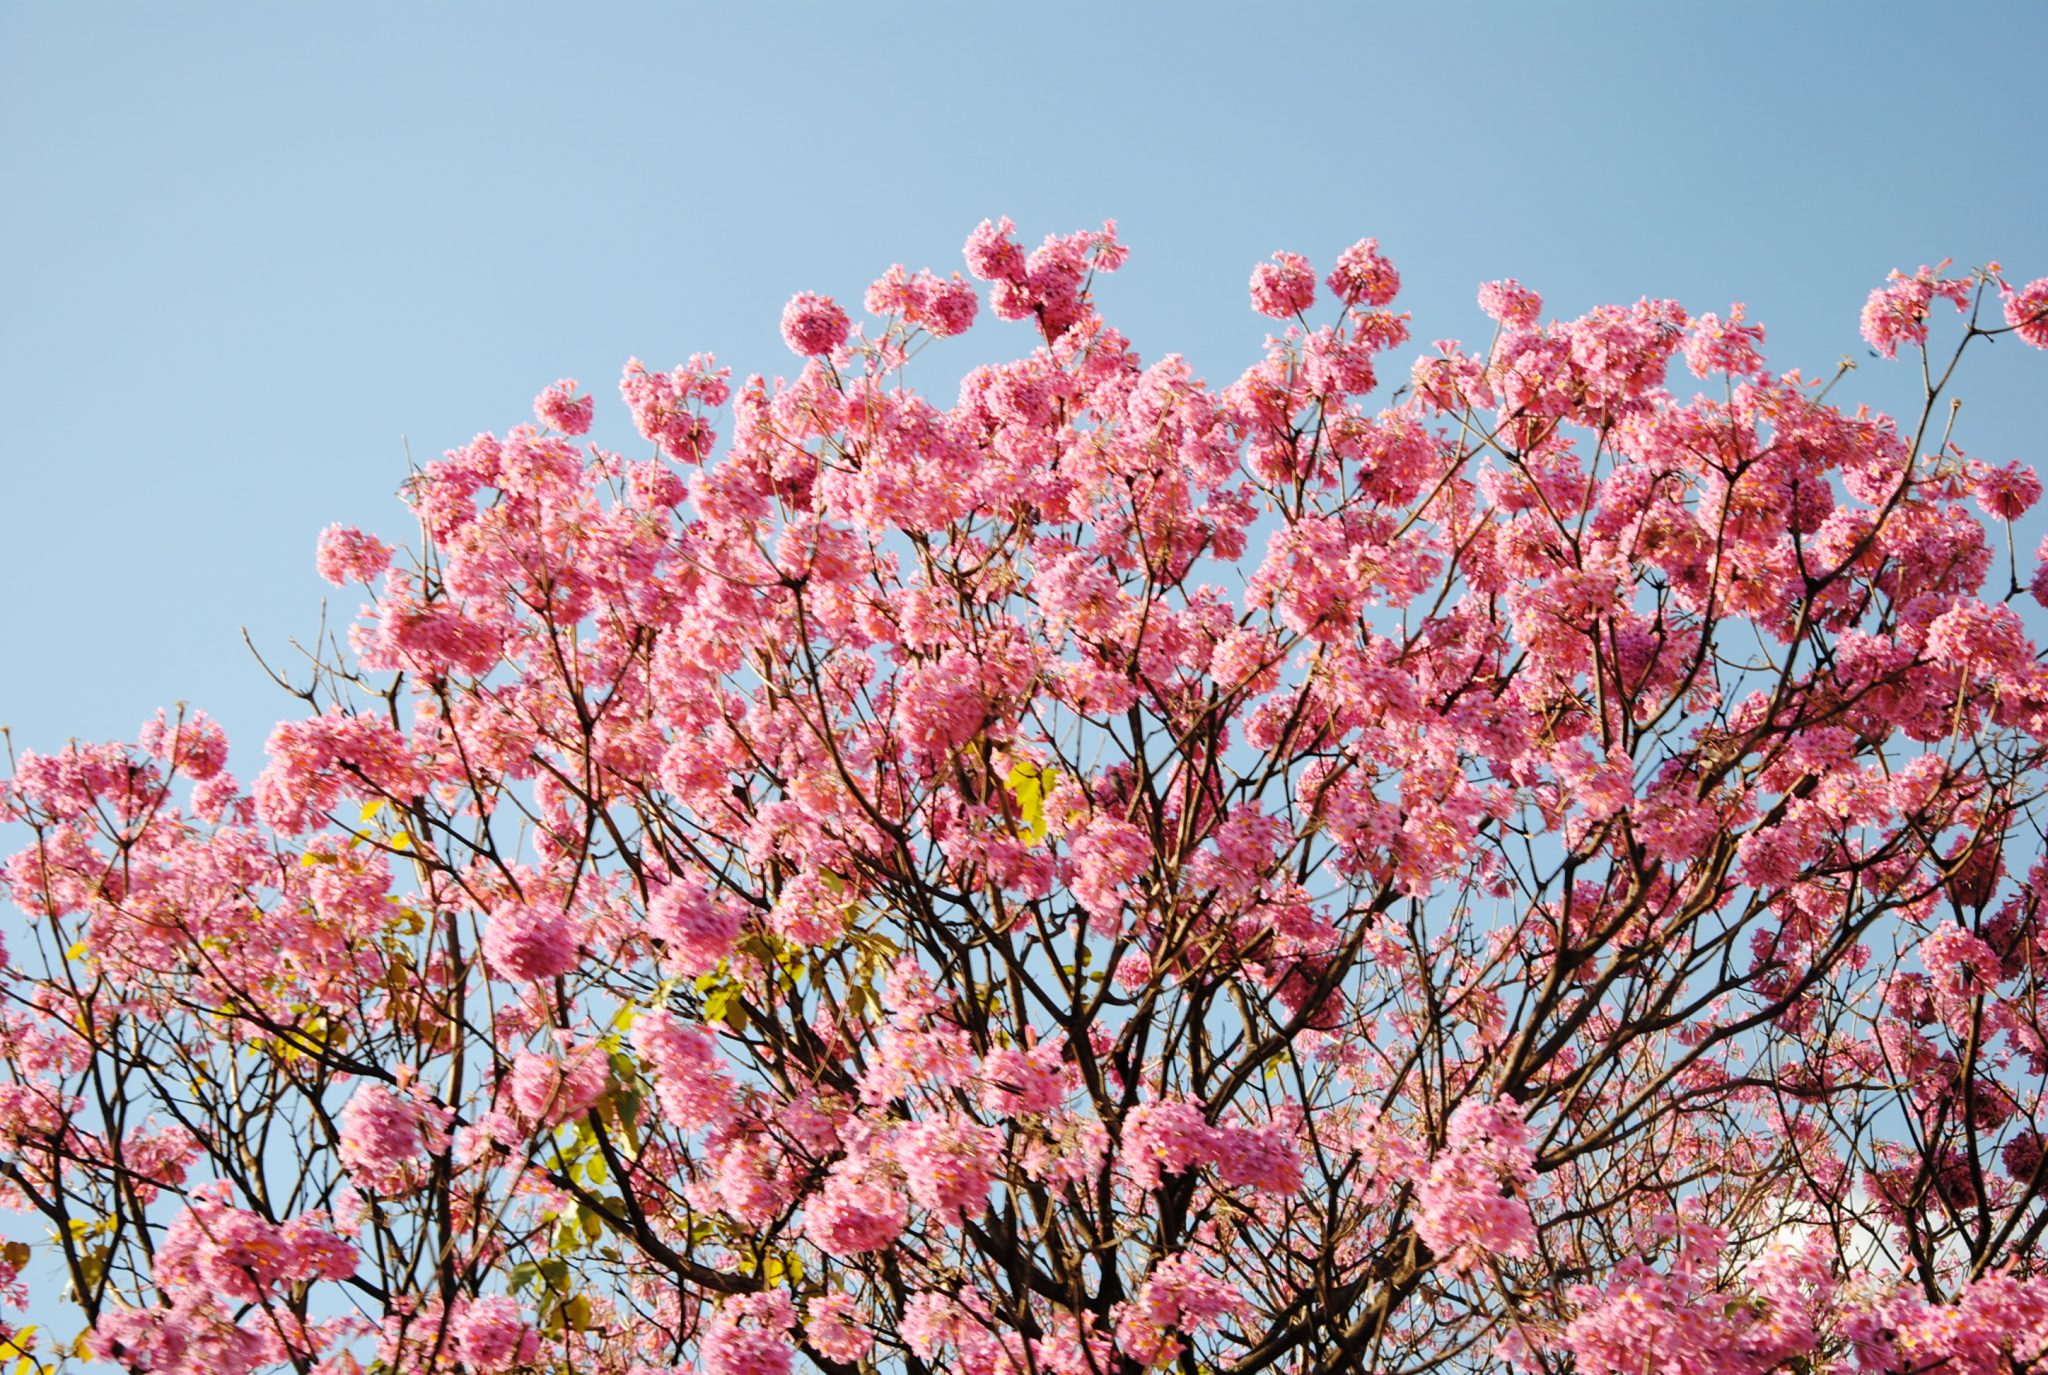 Ipê rosa árvore que chama a atenção por sua beleza e coloração